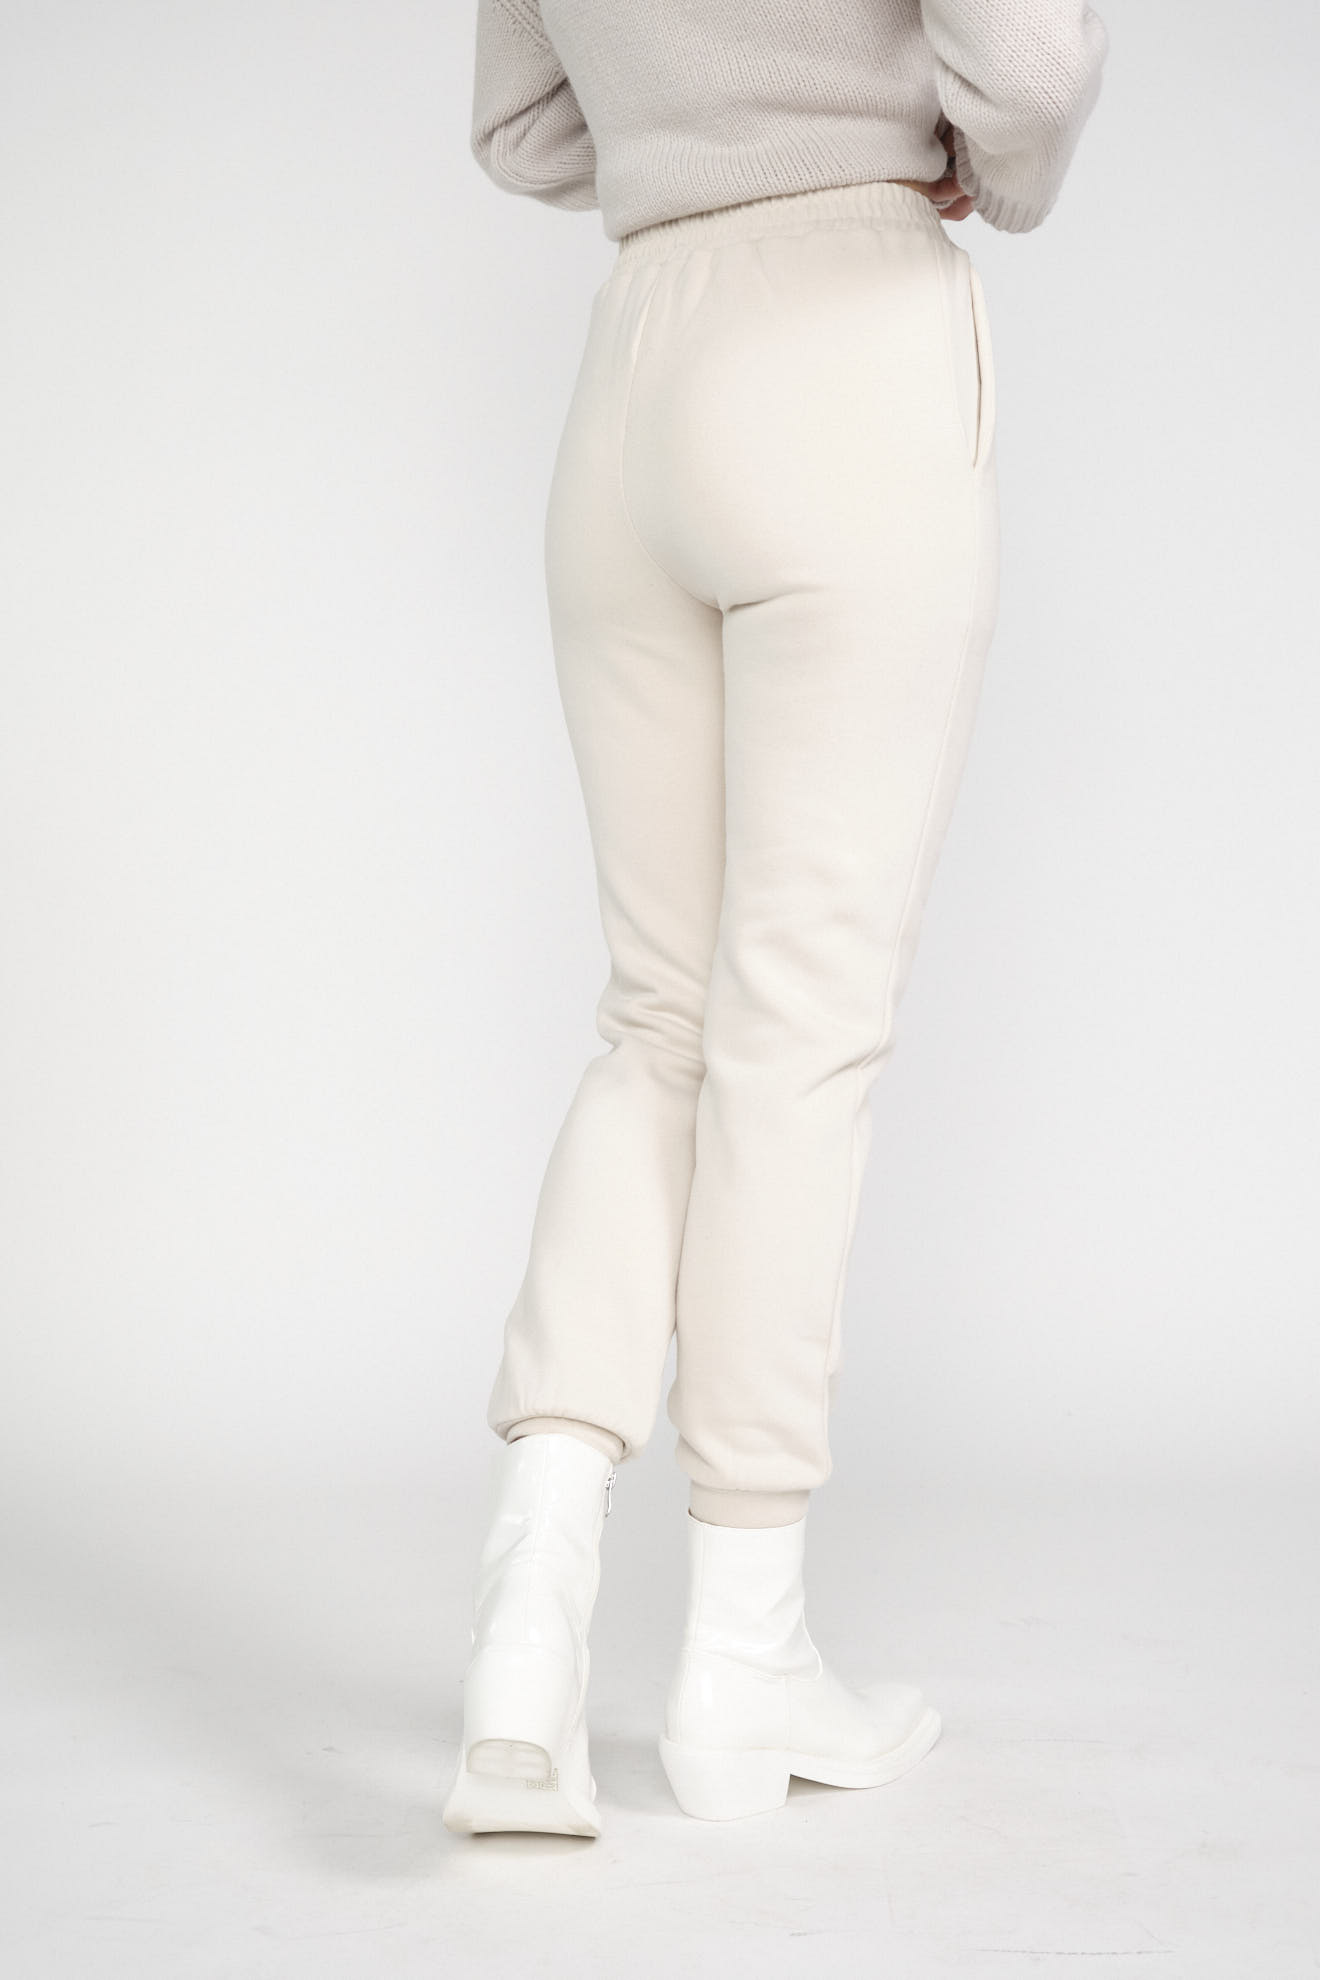 dondup pants white plain cotton